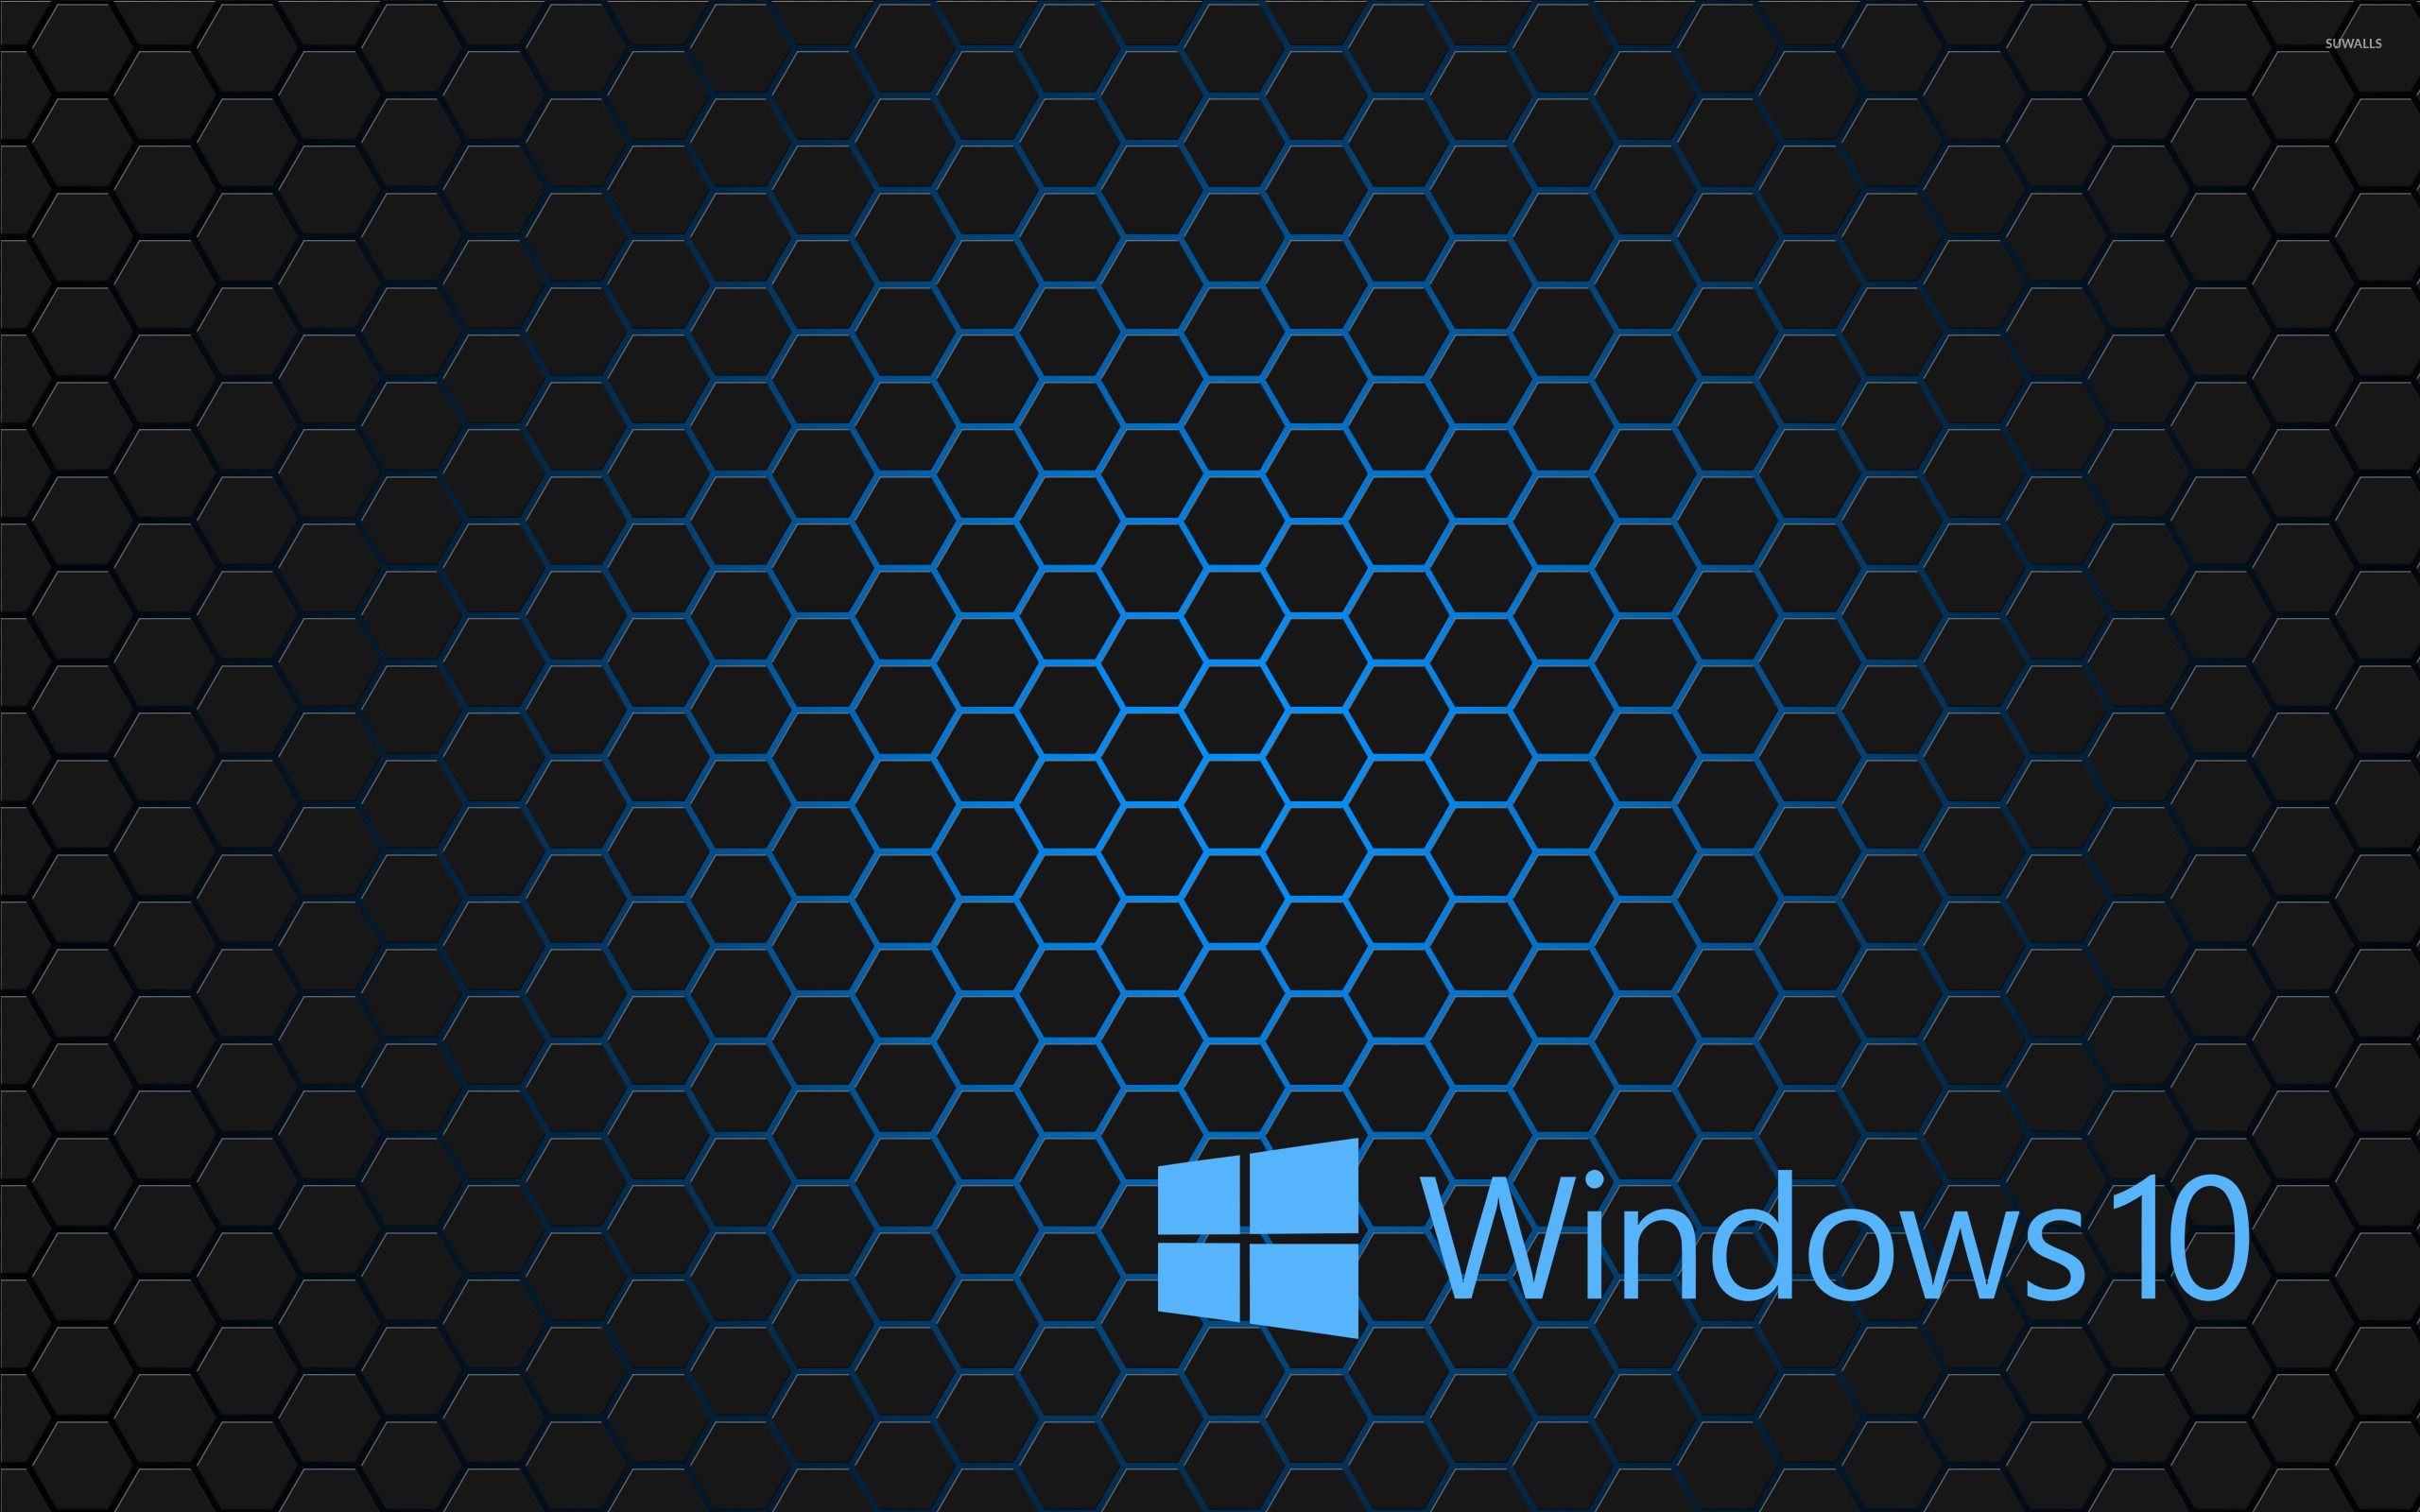 Windows 10 blue text logo on hexagons wallpaper